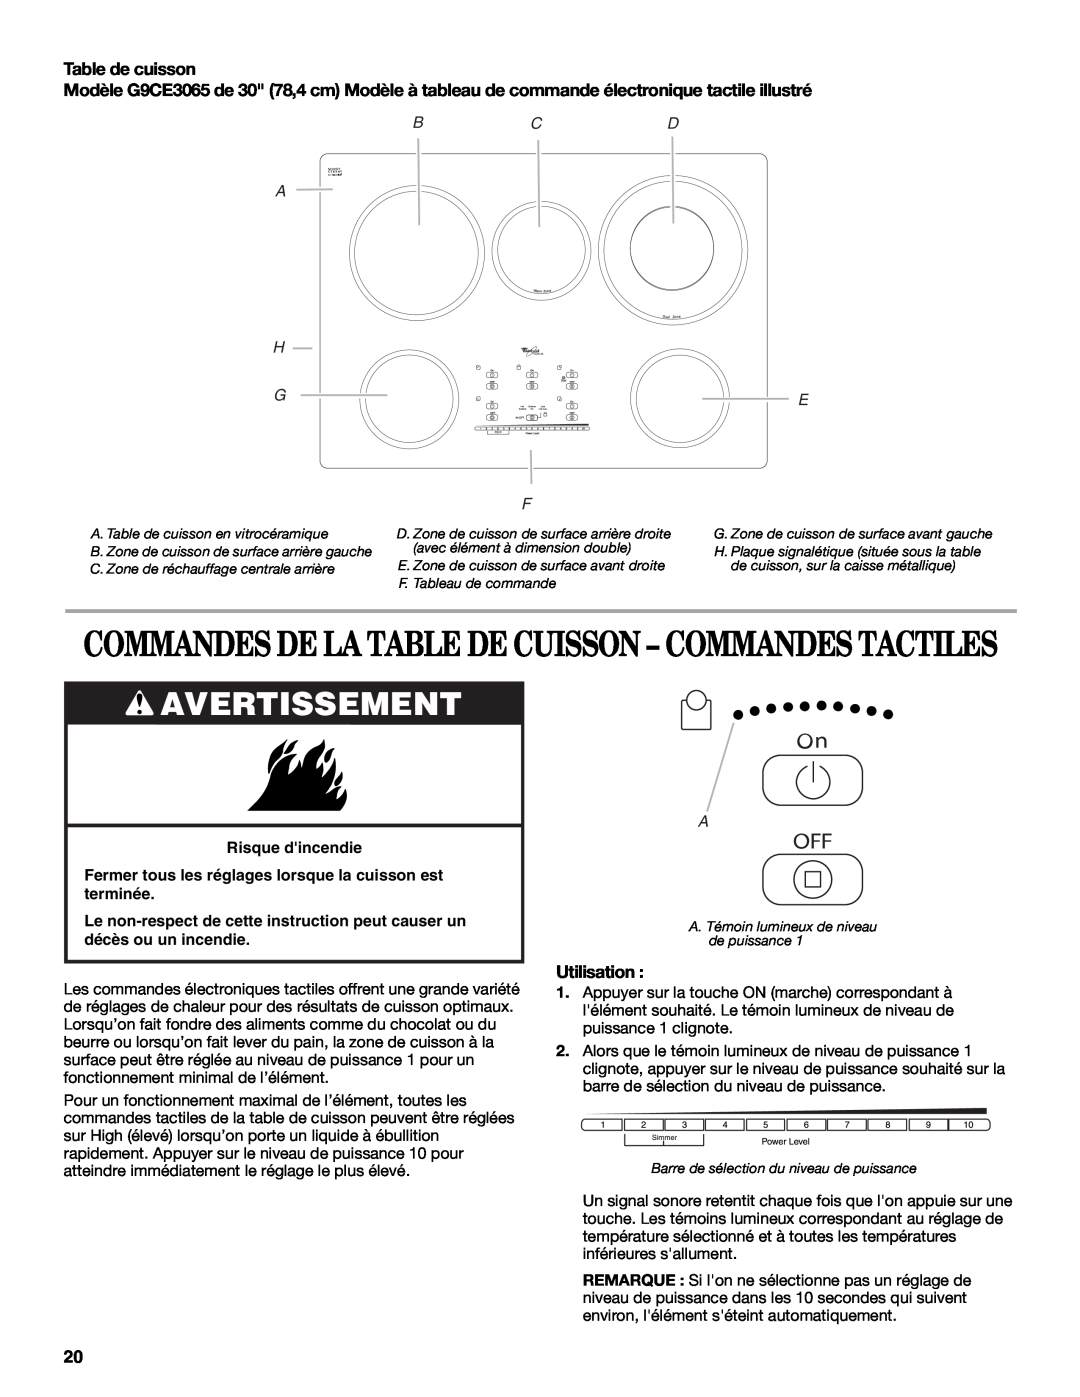 Whirlpool G9CE3065XB Avertissement, Commandes De La Table De Cuisson - Commandes Tactiles, Table de cuisson, Utilisation 